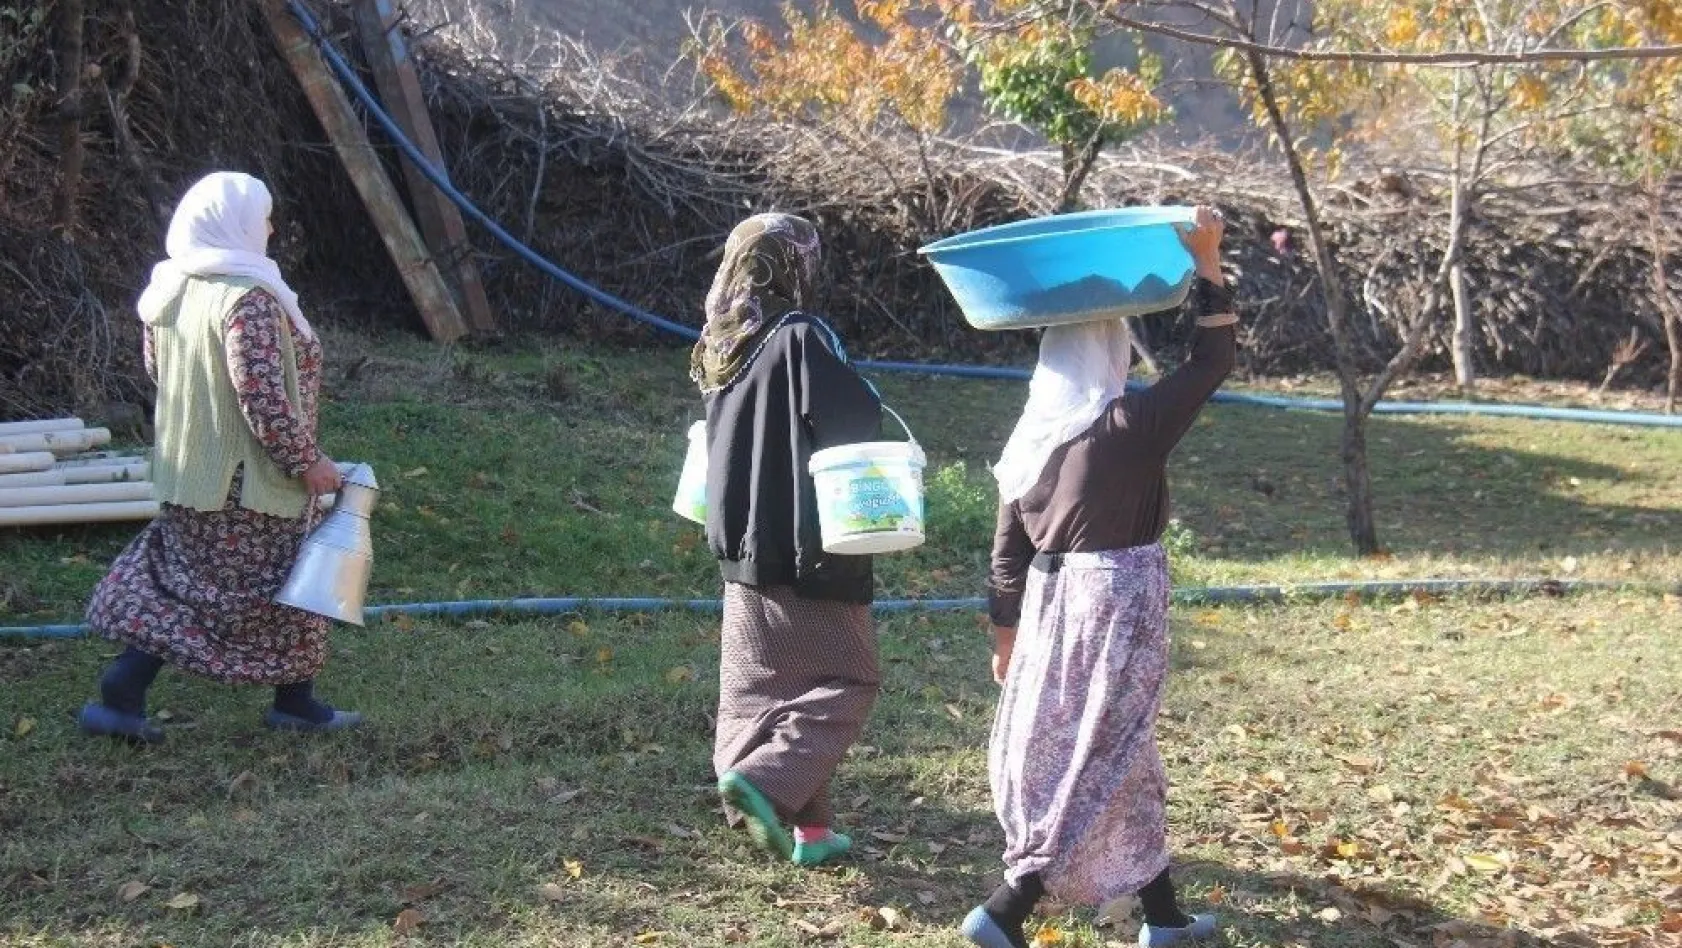 Suları olmayan köylüler su ihtiyaçlarını nehirden karşılıyor
